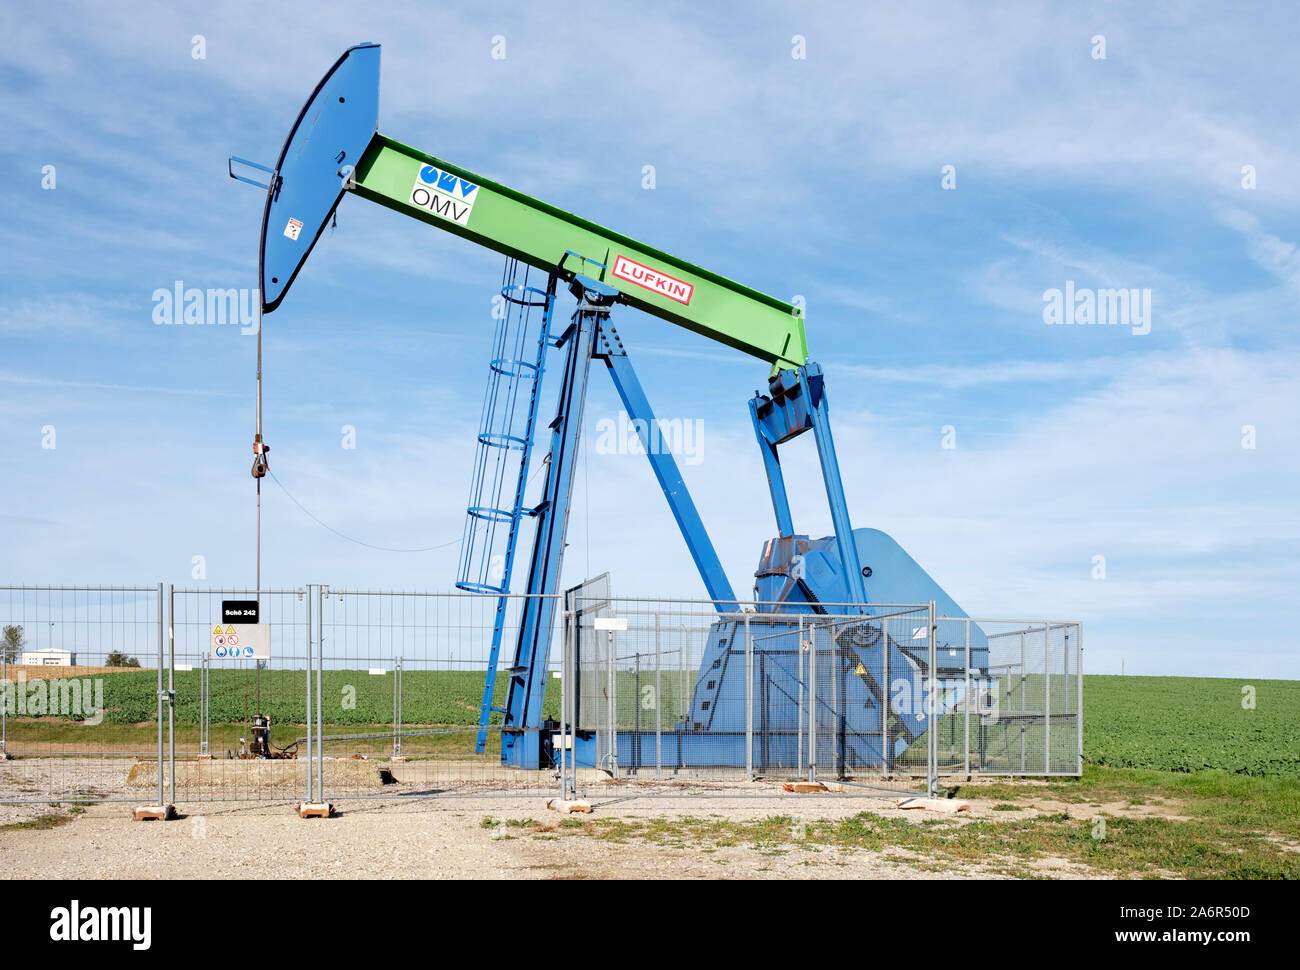 L'OMV chevalet de pompage de pétrole brut de l'exploitation minière dans la région de Basse-Autriche Weinviertel (Niederösterreich) Banque D'Images